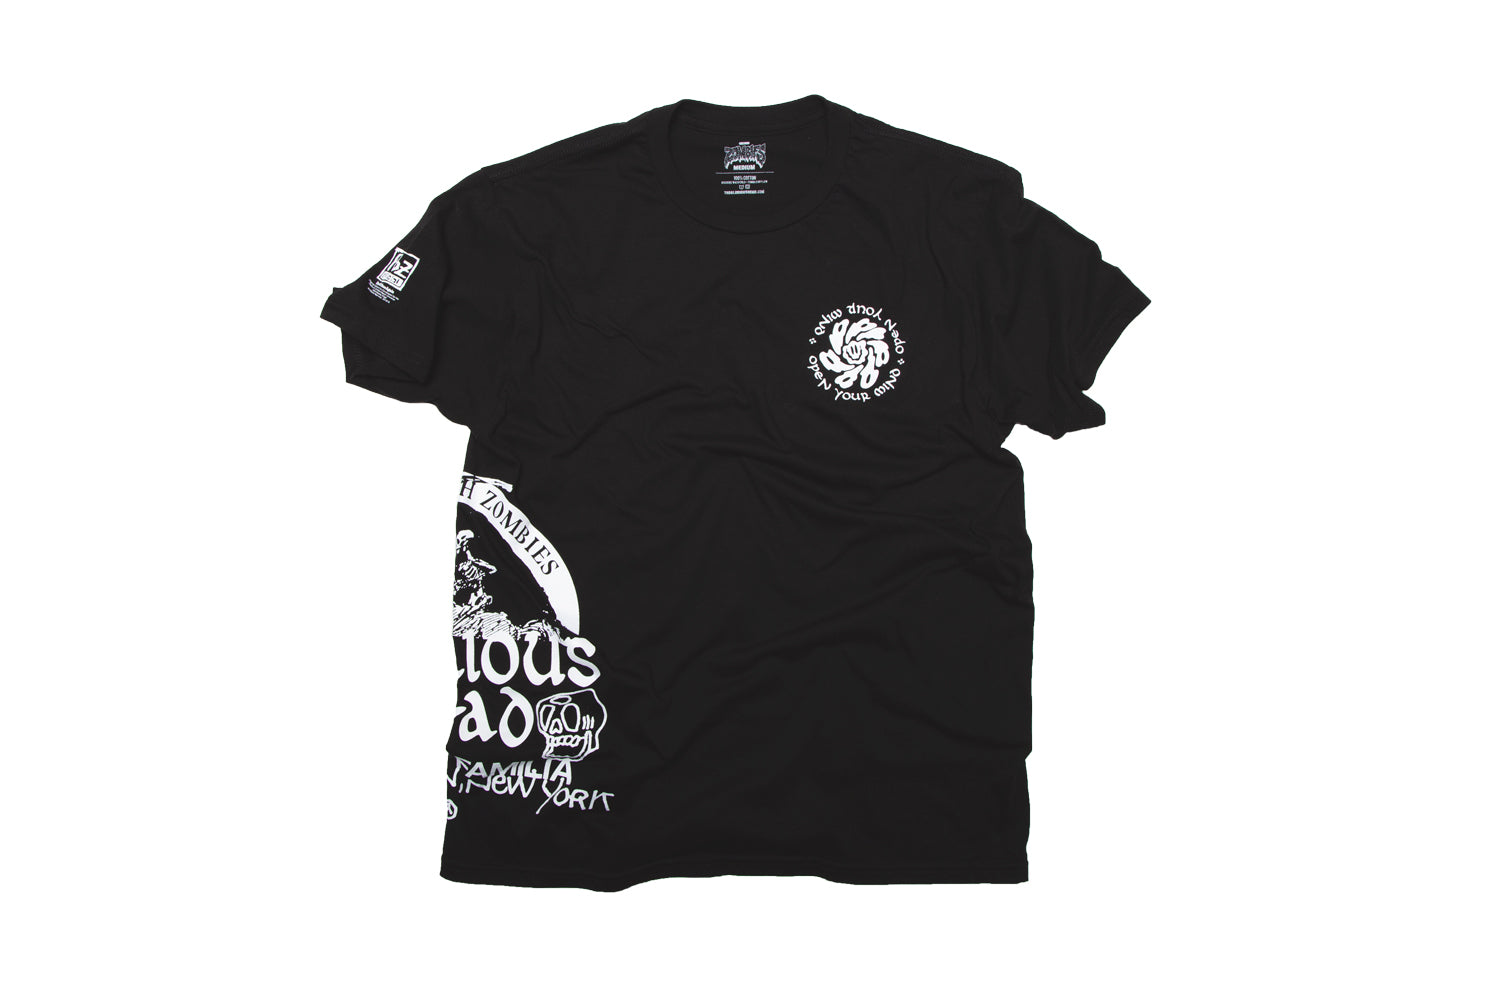 Flatbush Zombies Ss Fbz La Familia T Shirt Limited Release The Glorious Dead